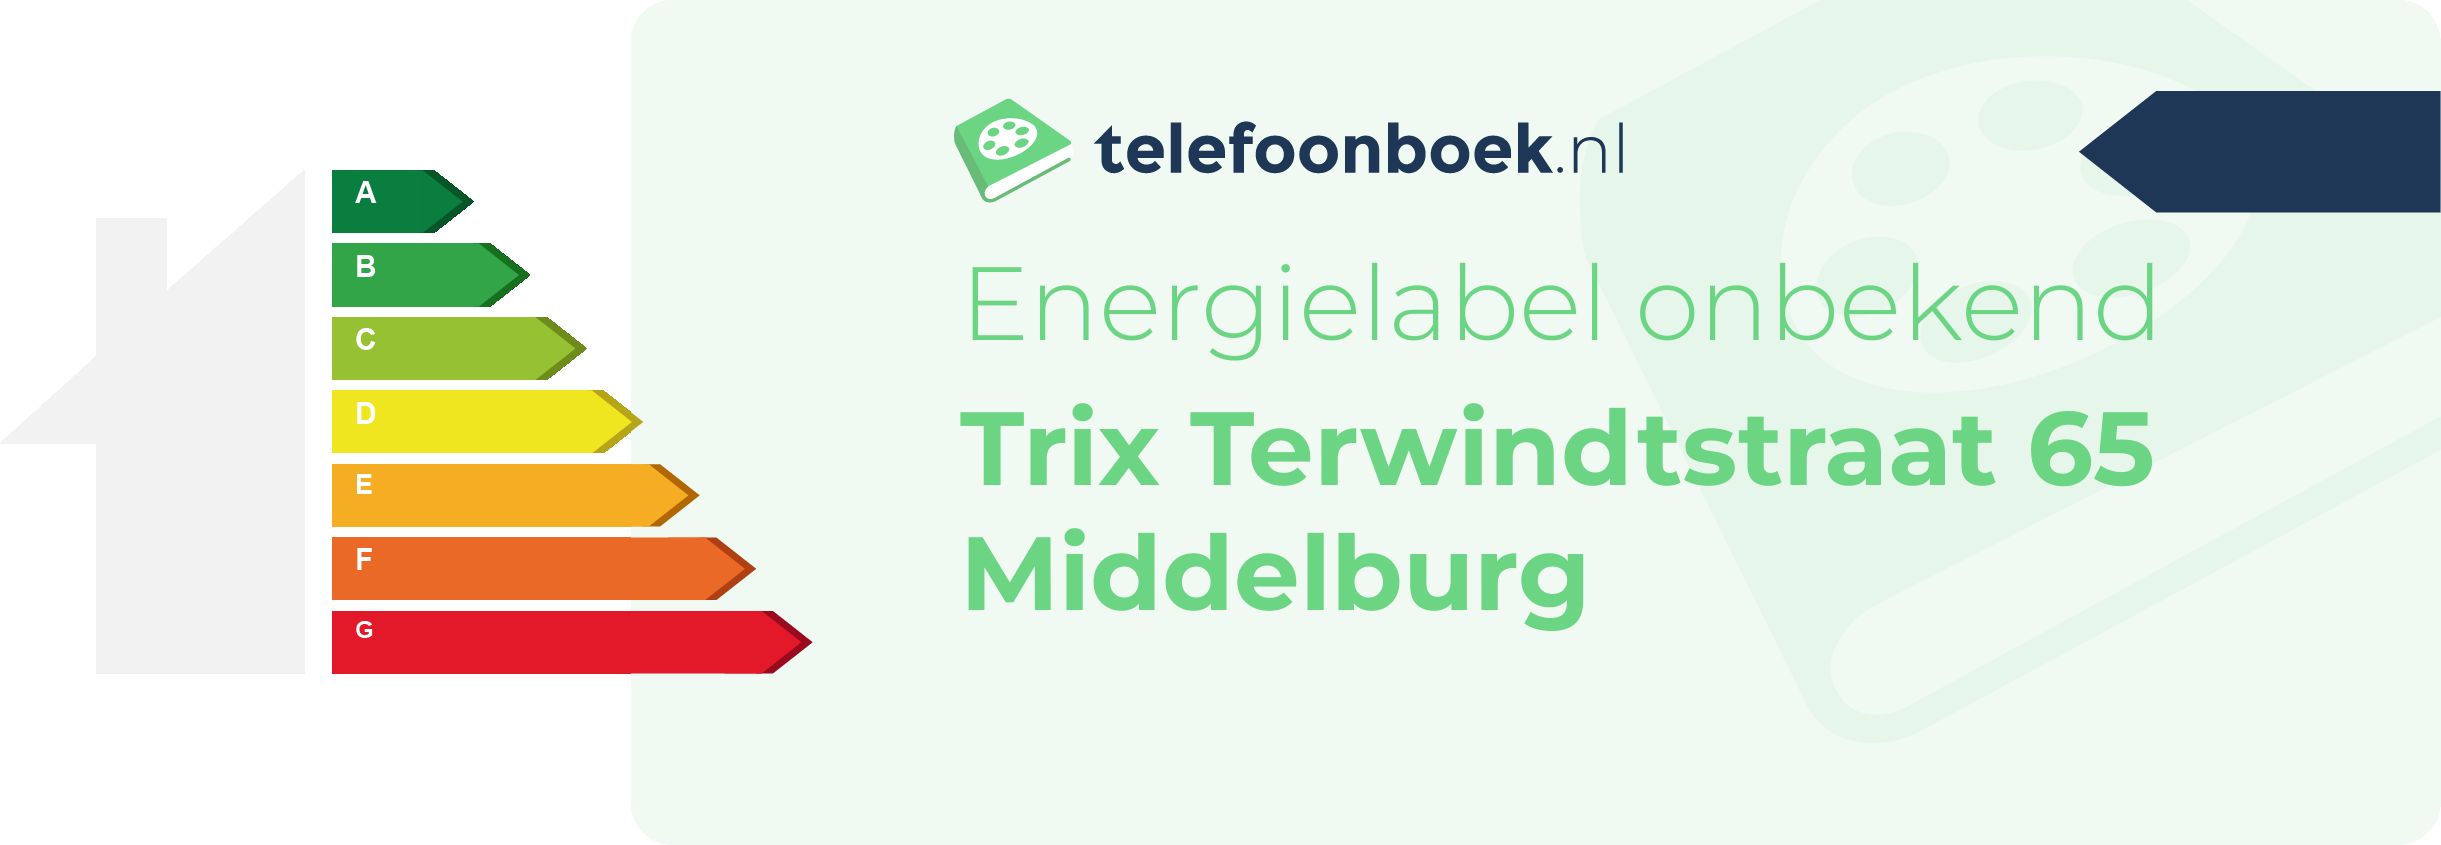 Energielabel Trix Terwindtstraat 65 Middelburg